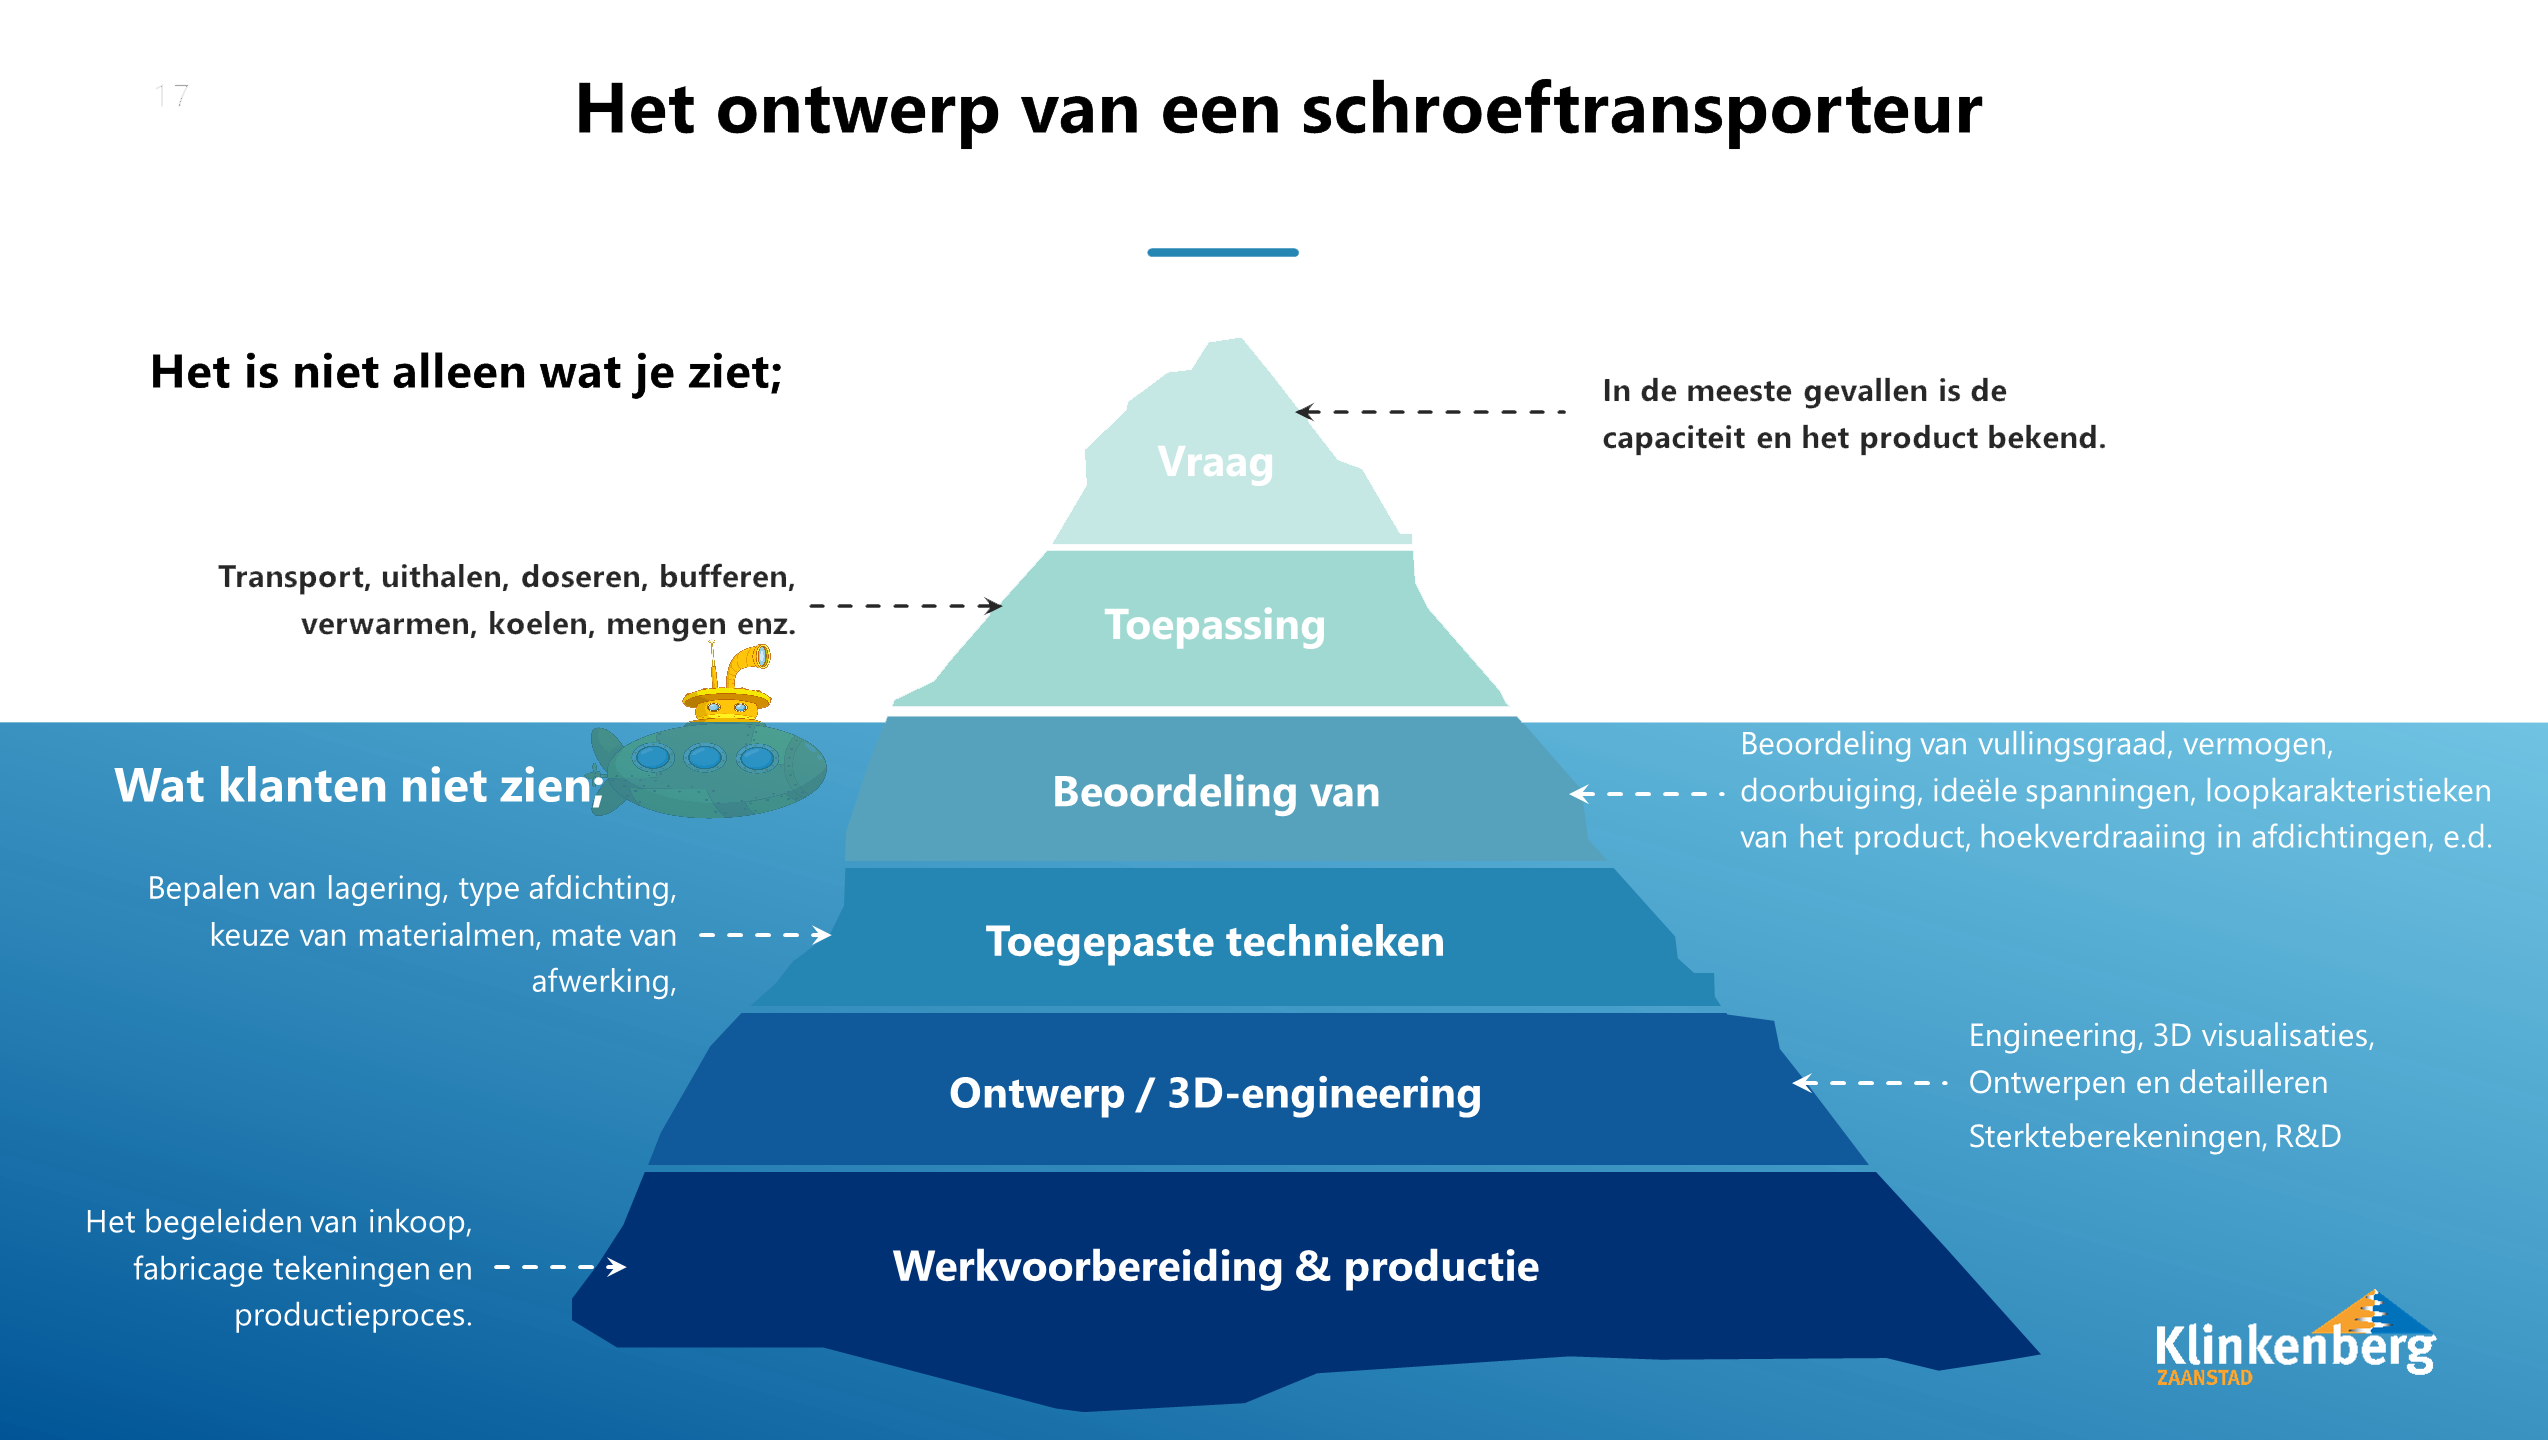 Schematische opbouw (ijsberg view) waar inzicht gegeven wordt hoe een schroeftransporteurs ontworpen wordt 